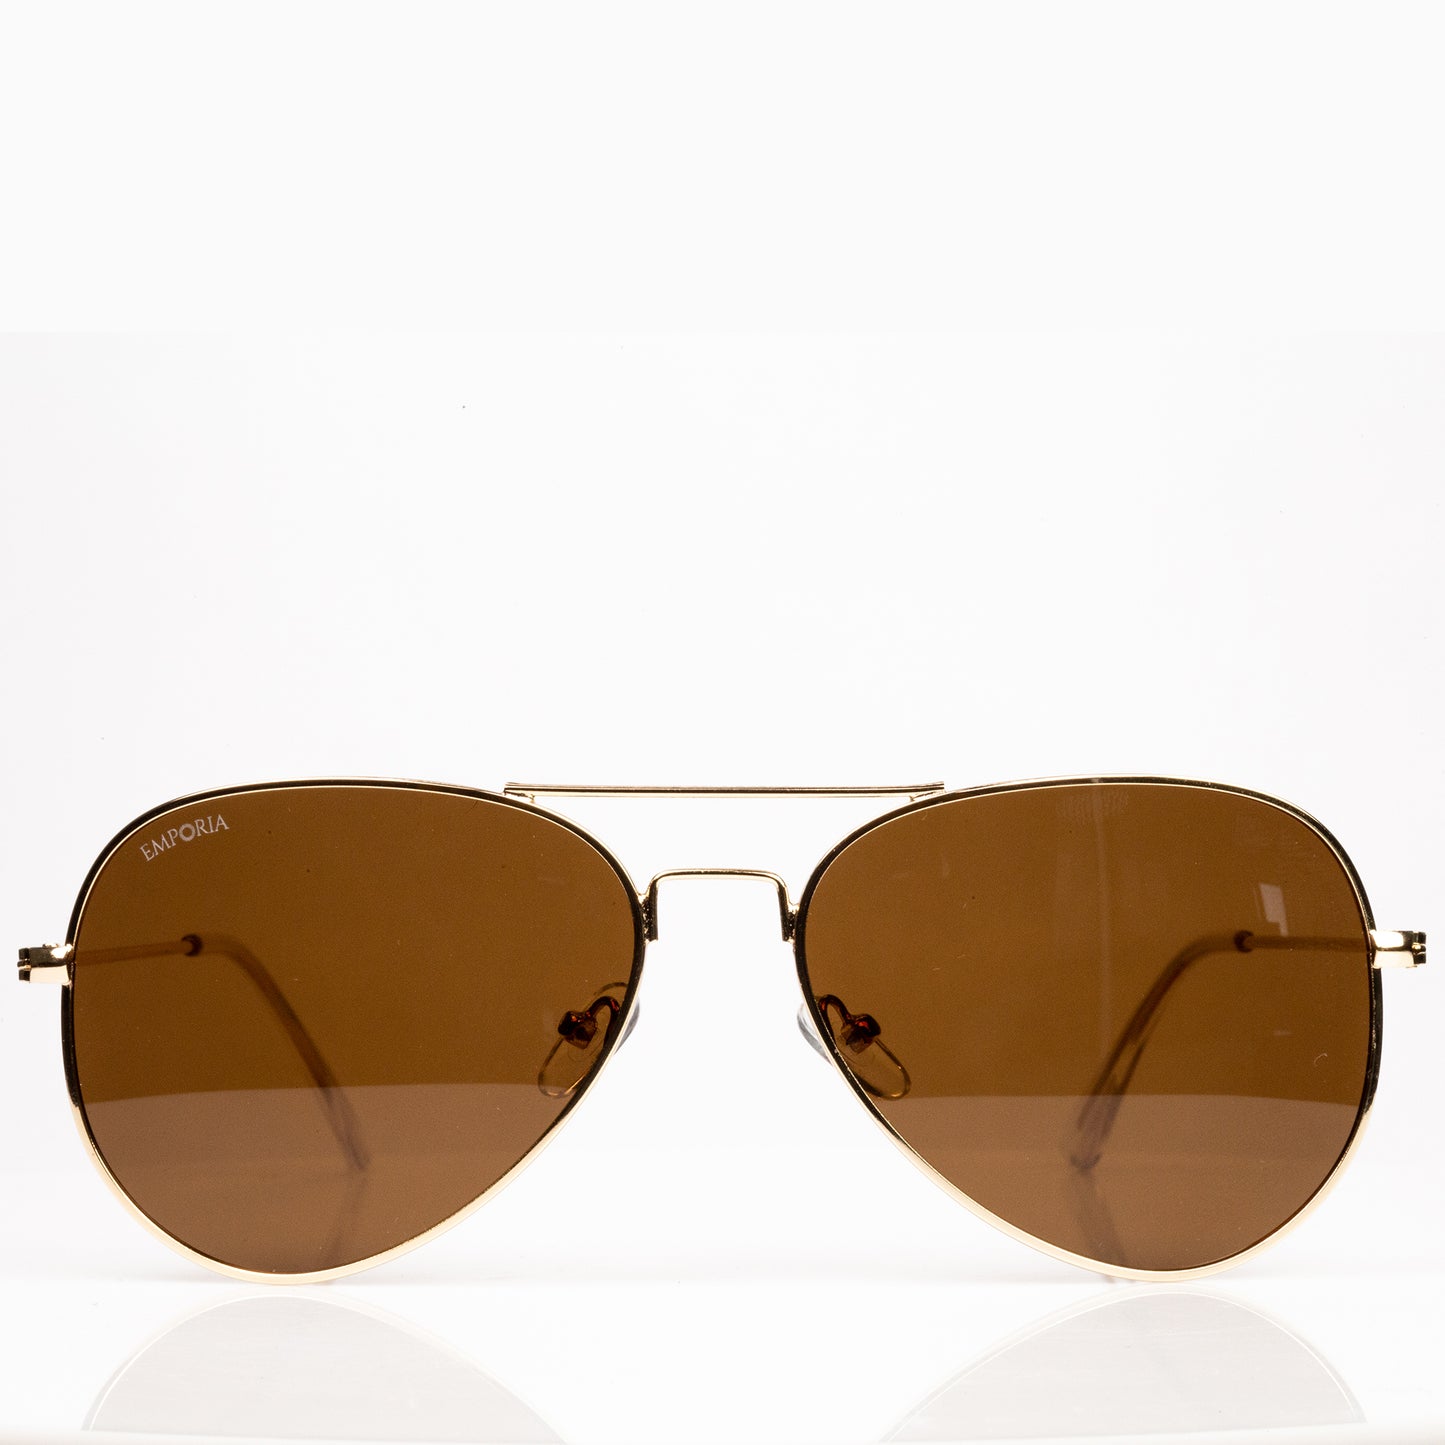 Emporia Italy - Pilóta Napszemüveg "SIVATAG", polarizált UV szűrős napszemüveg tokkal és tisztítókendővel,  világosbarna lencsék, arany színű keret